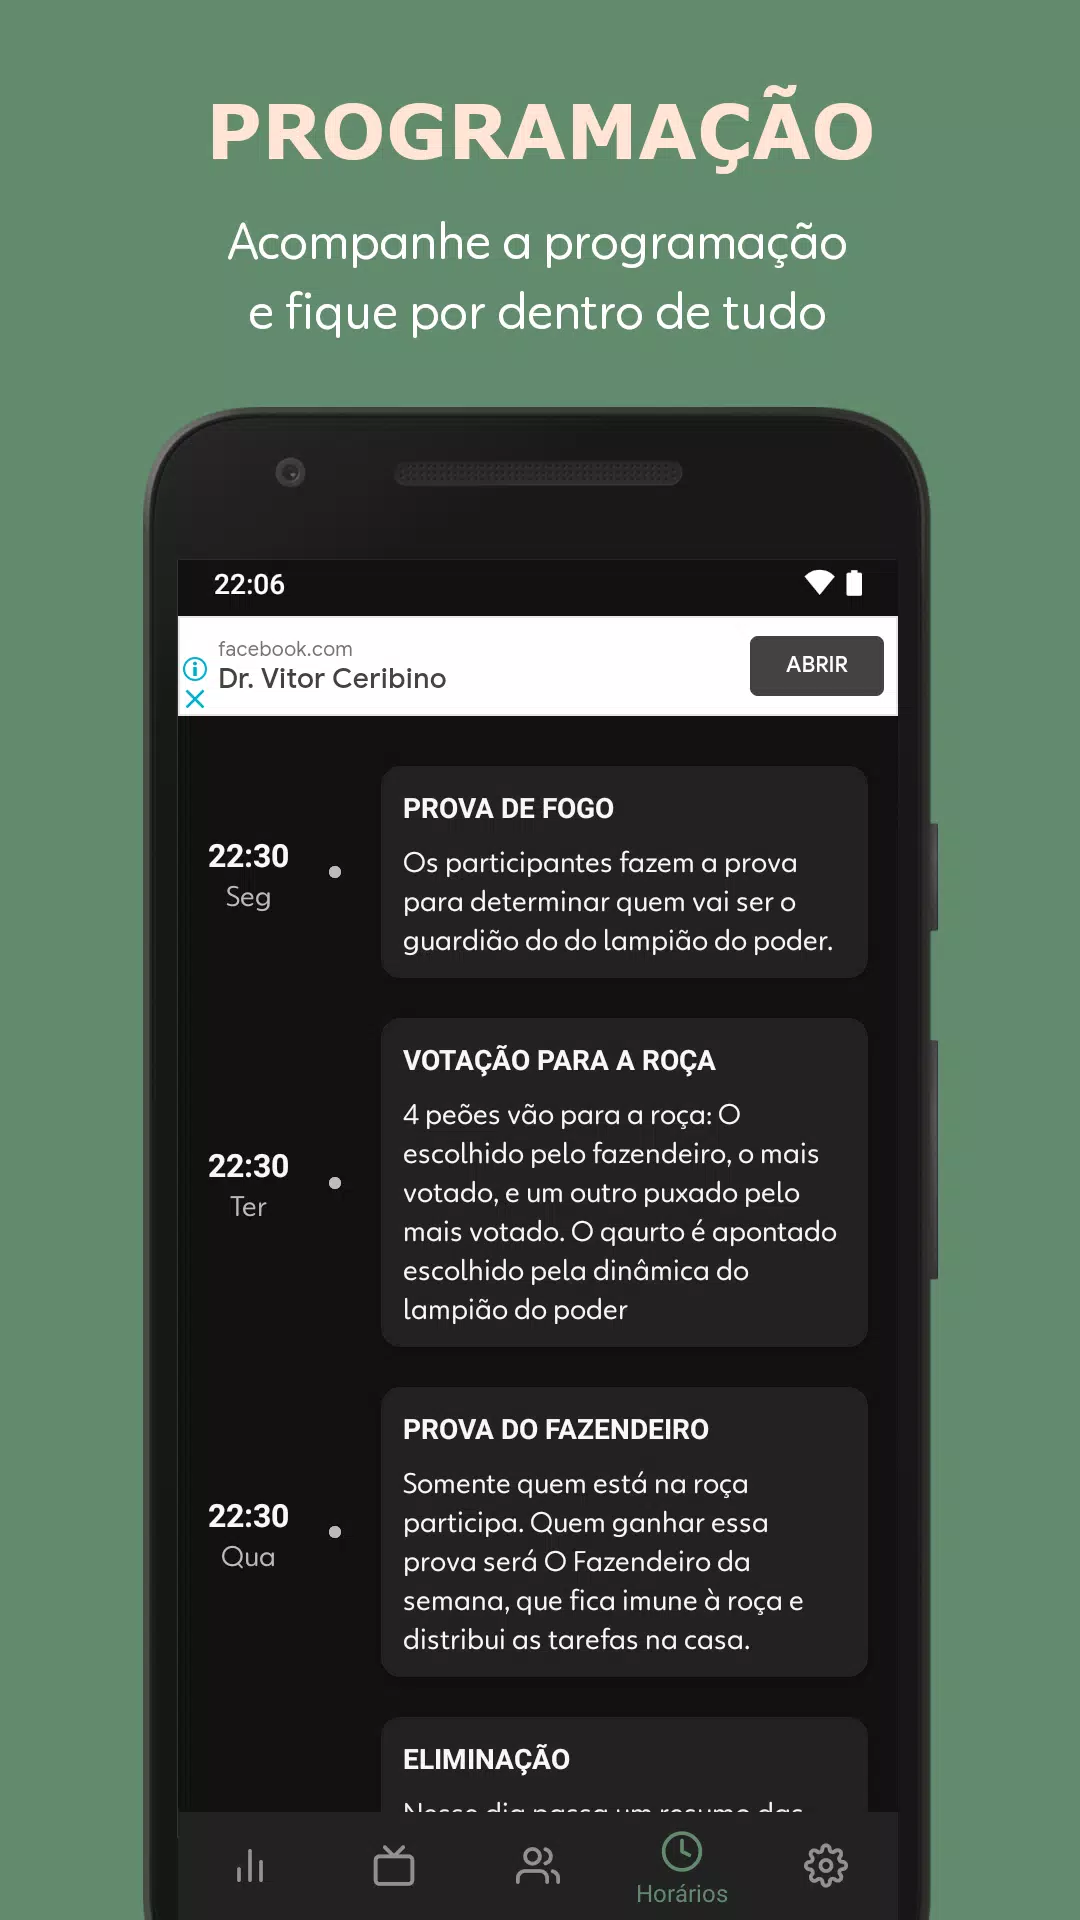 A FAZENDA AO VIVO GRÁTIS APK for Android Download